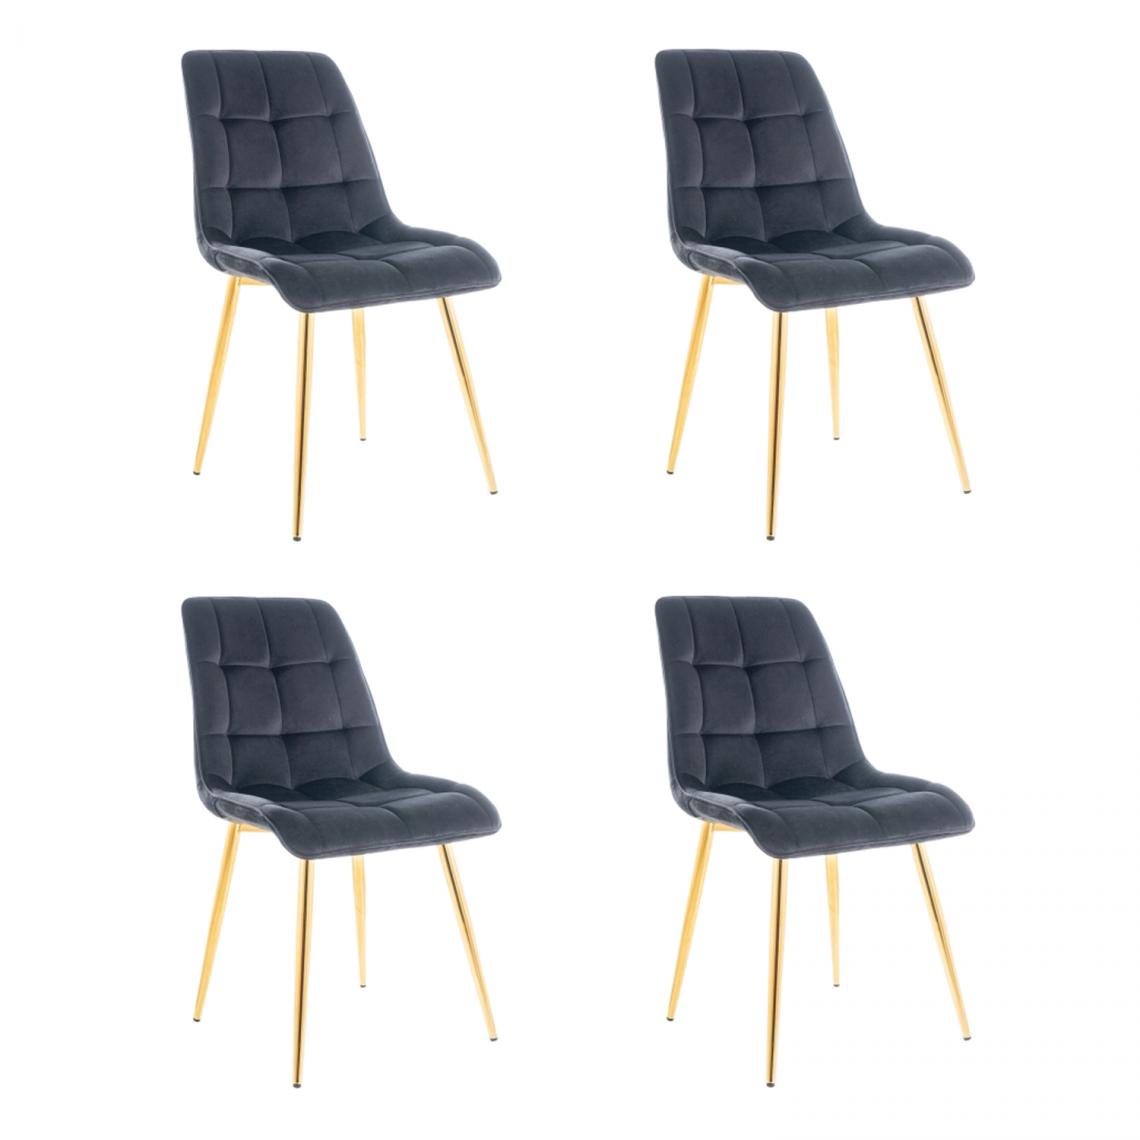 Hucoco - MASI - Lot de 4 chaises matelassées pour salon - 89x51x44 cm - Tissu velouté - Dossier matelassé - Noir - Chaises